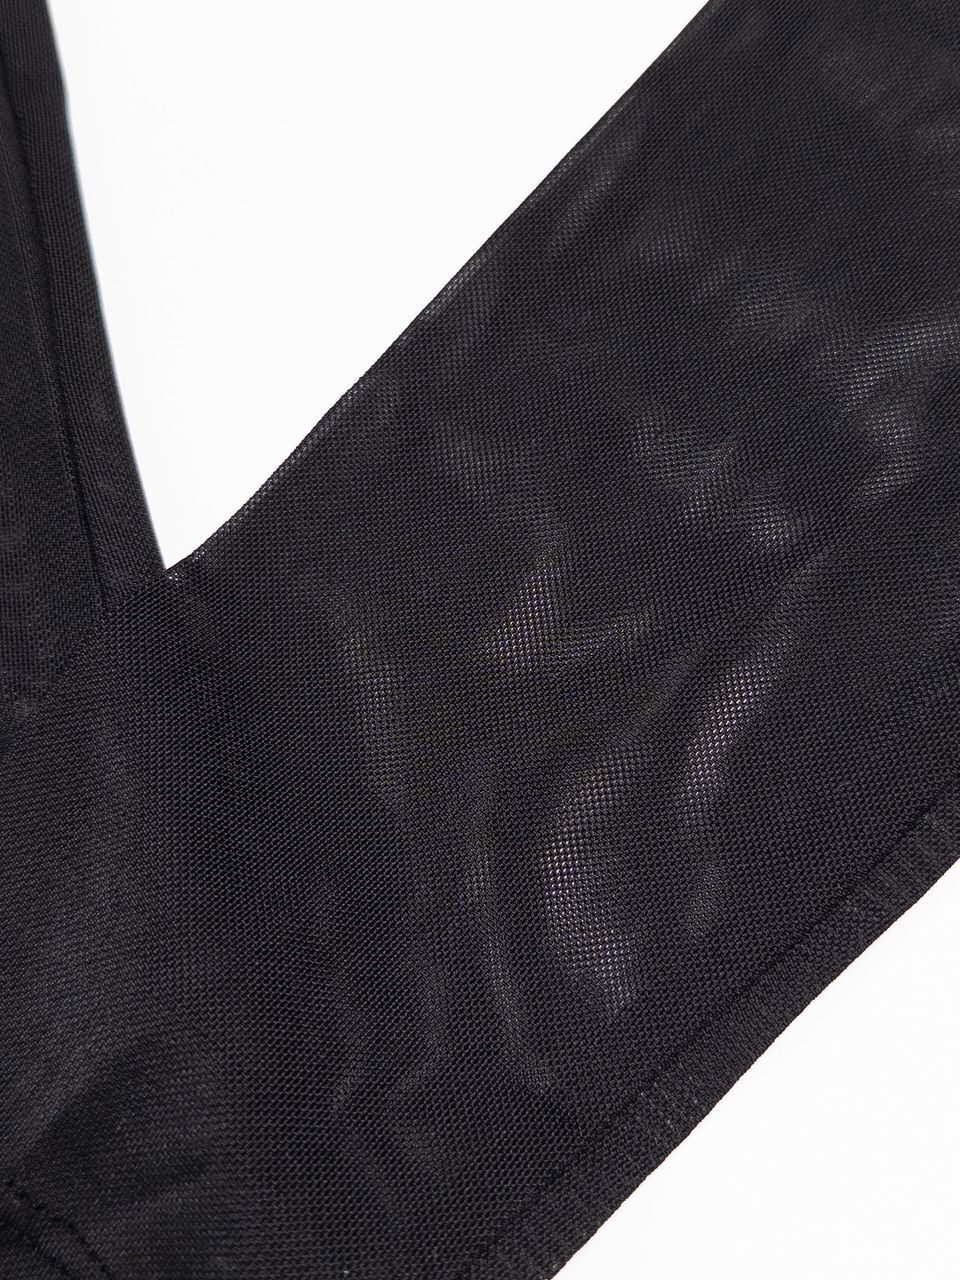 Блуза ткань сетка с декольте цвет черный размер XS (40 RUS) NA-KD